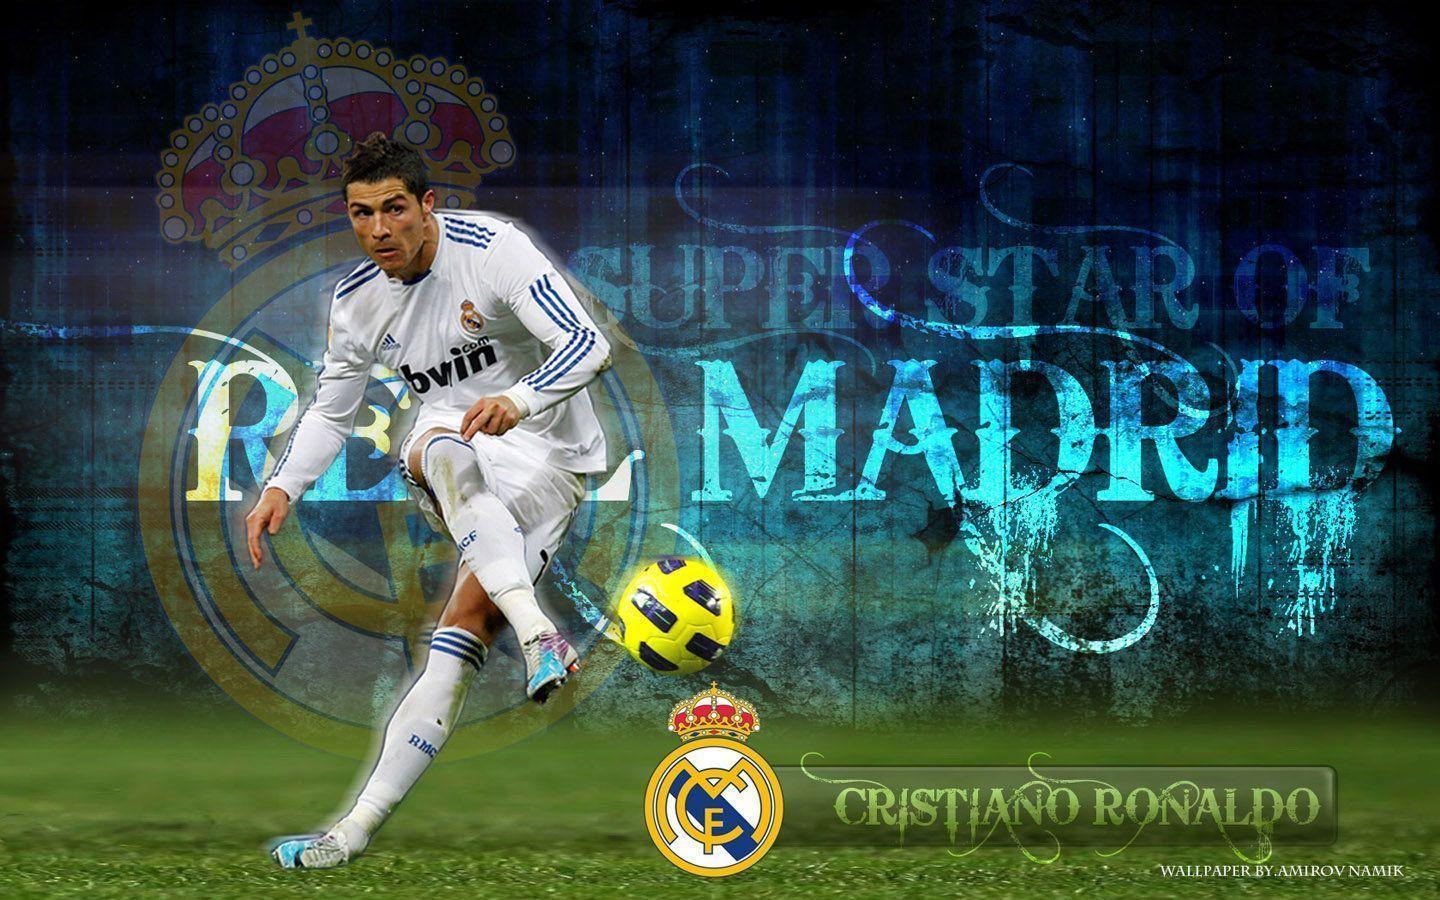 Cristiano Ronaldo Free Kick Wallpaper High Definition > Minionswallpaper